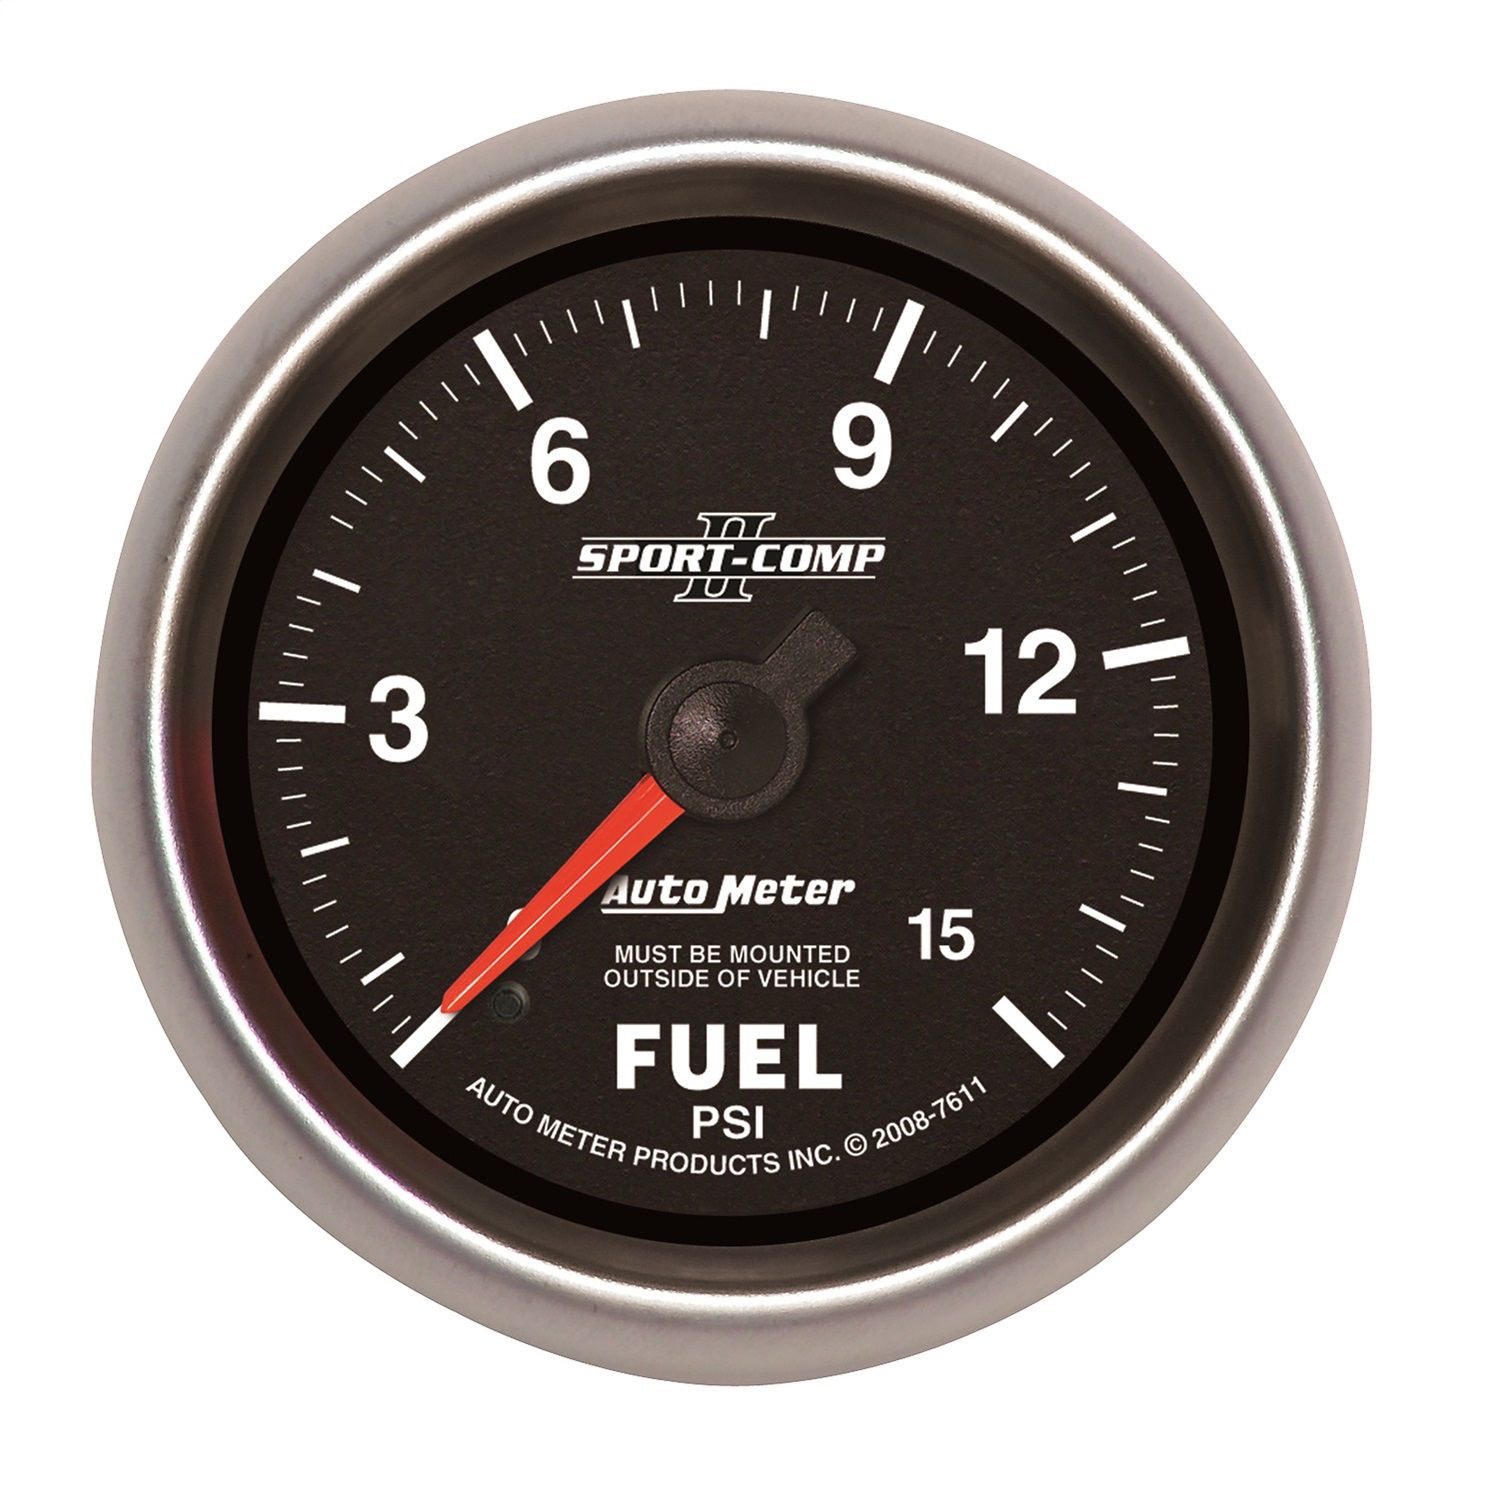 Auto Meter Auto Meter 7611 Sport-Comp II; Mechanical Fuel Pressure Gauge